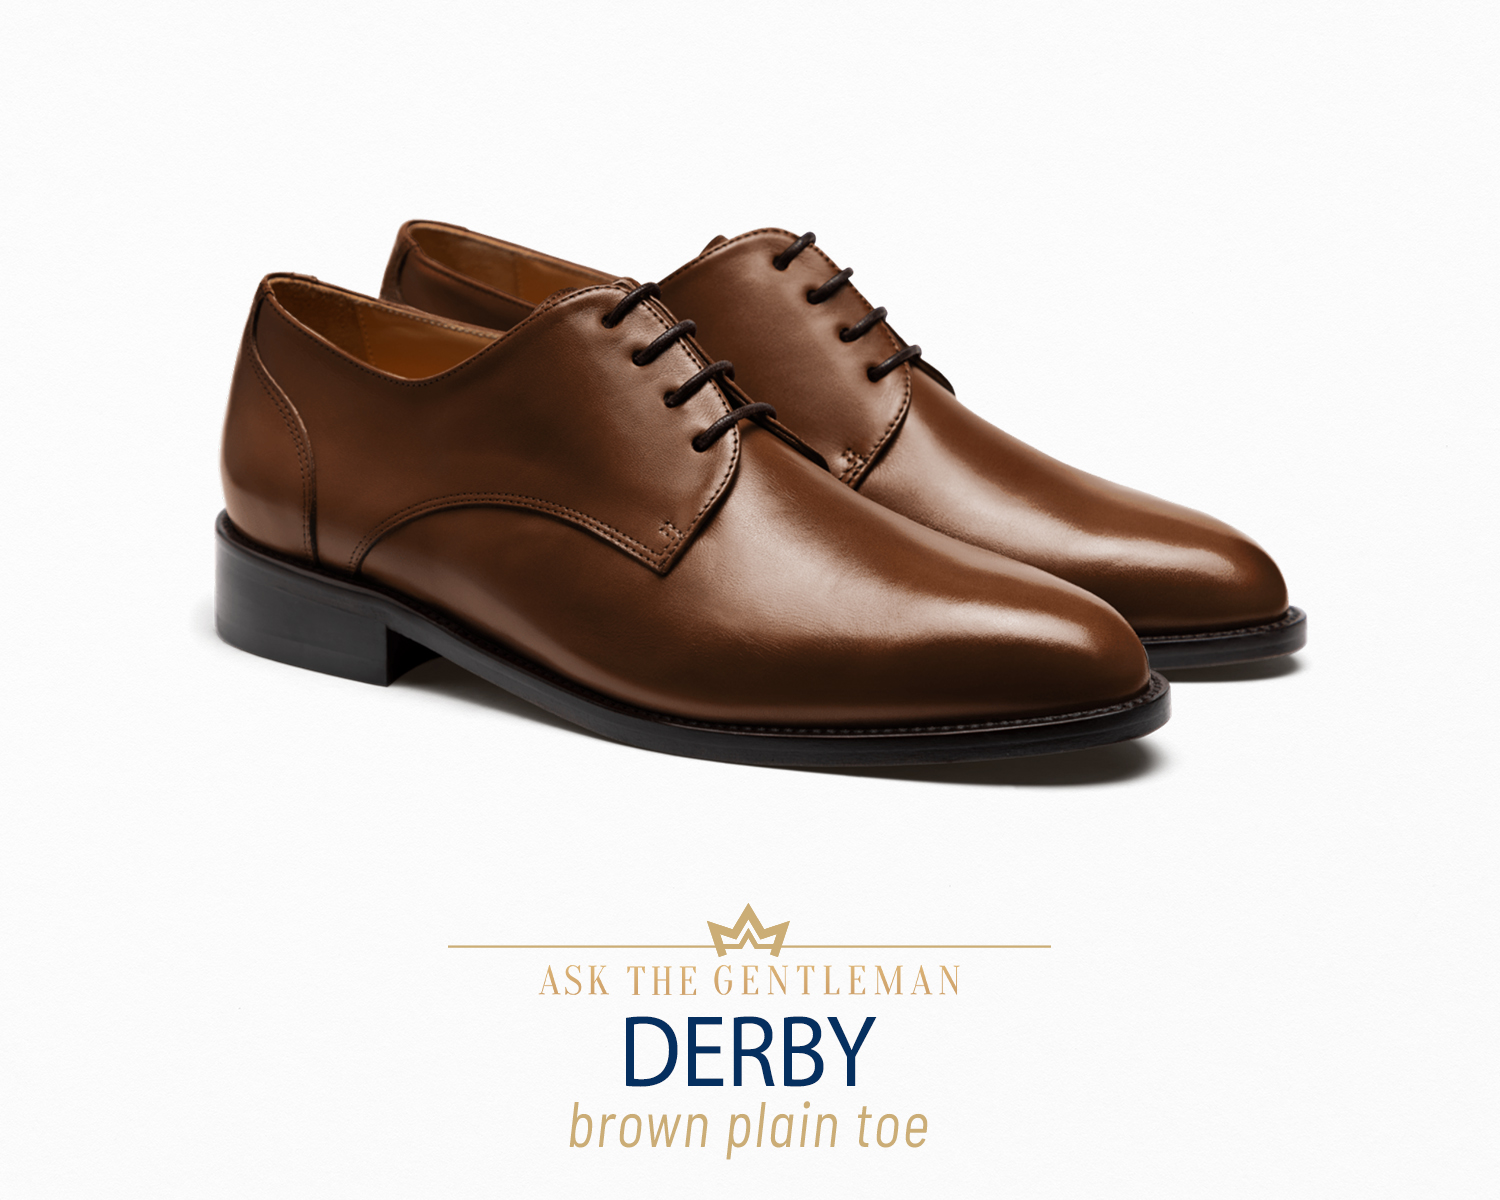 Brown derby dress shoe type